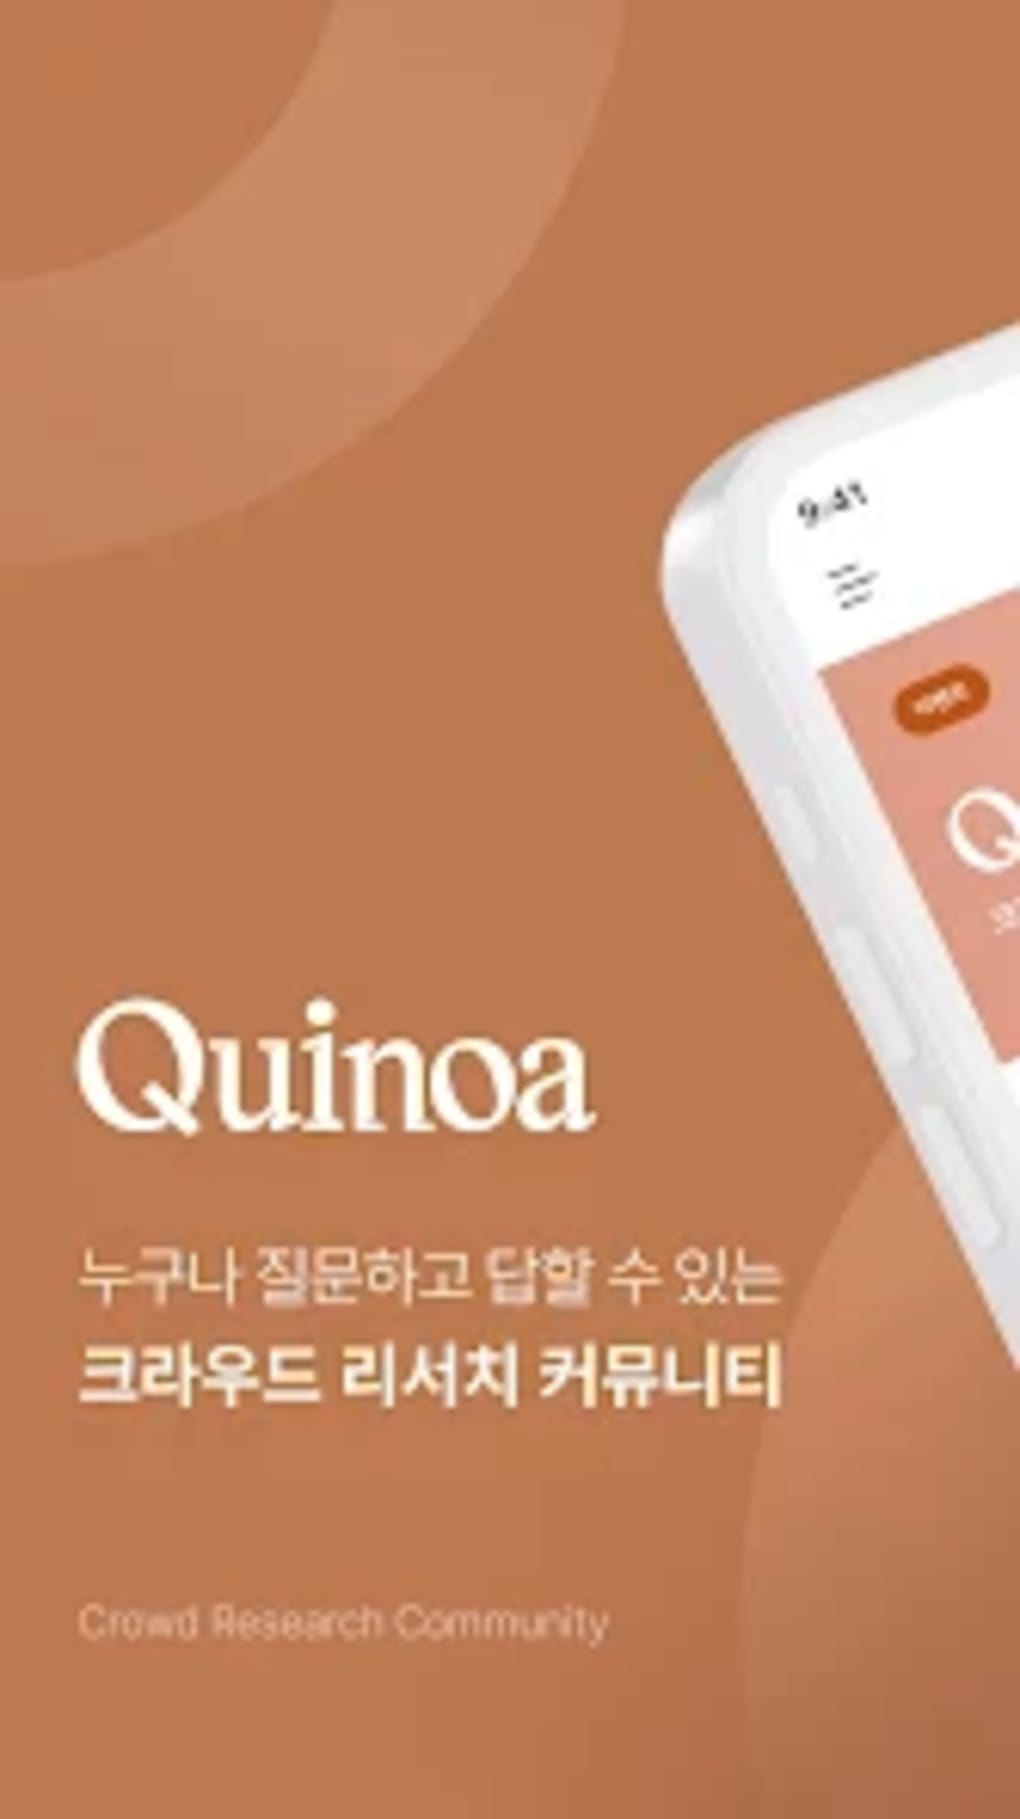 퀴노아 Quinoa - 크라우드 리서치 커뮤니티 for Android - Download